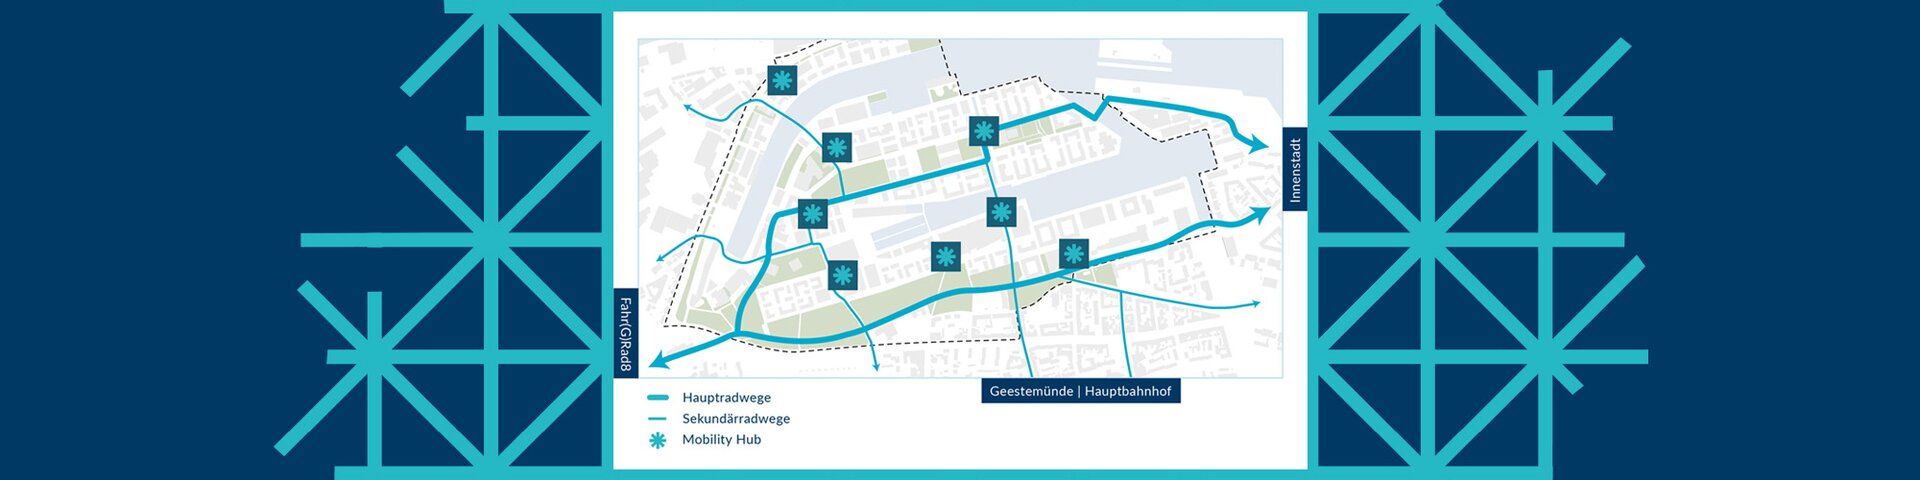 Karte: Mobility-Hubs im Werftquartier | © Pressestelle, Magistrat der Stadt Bremerhaven